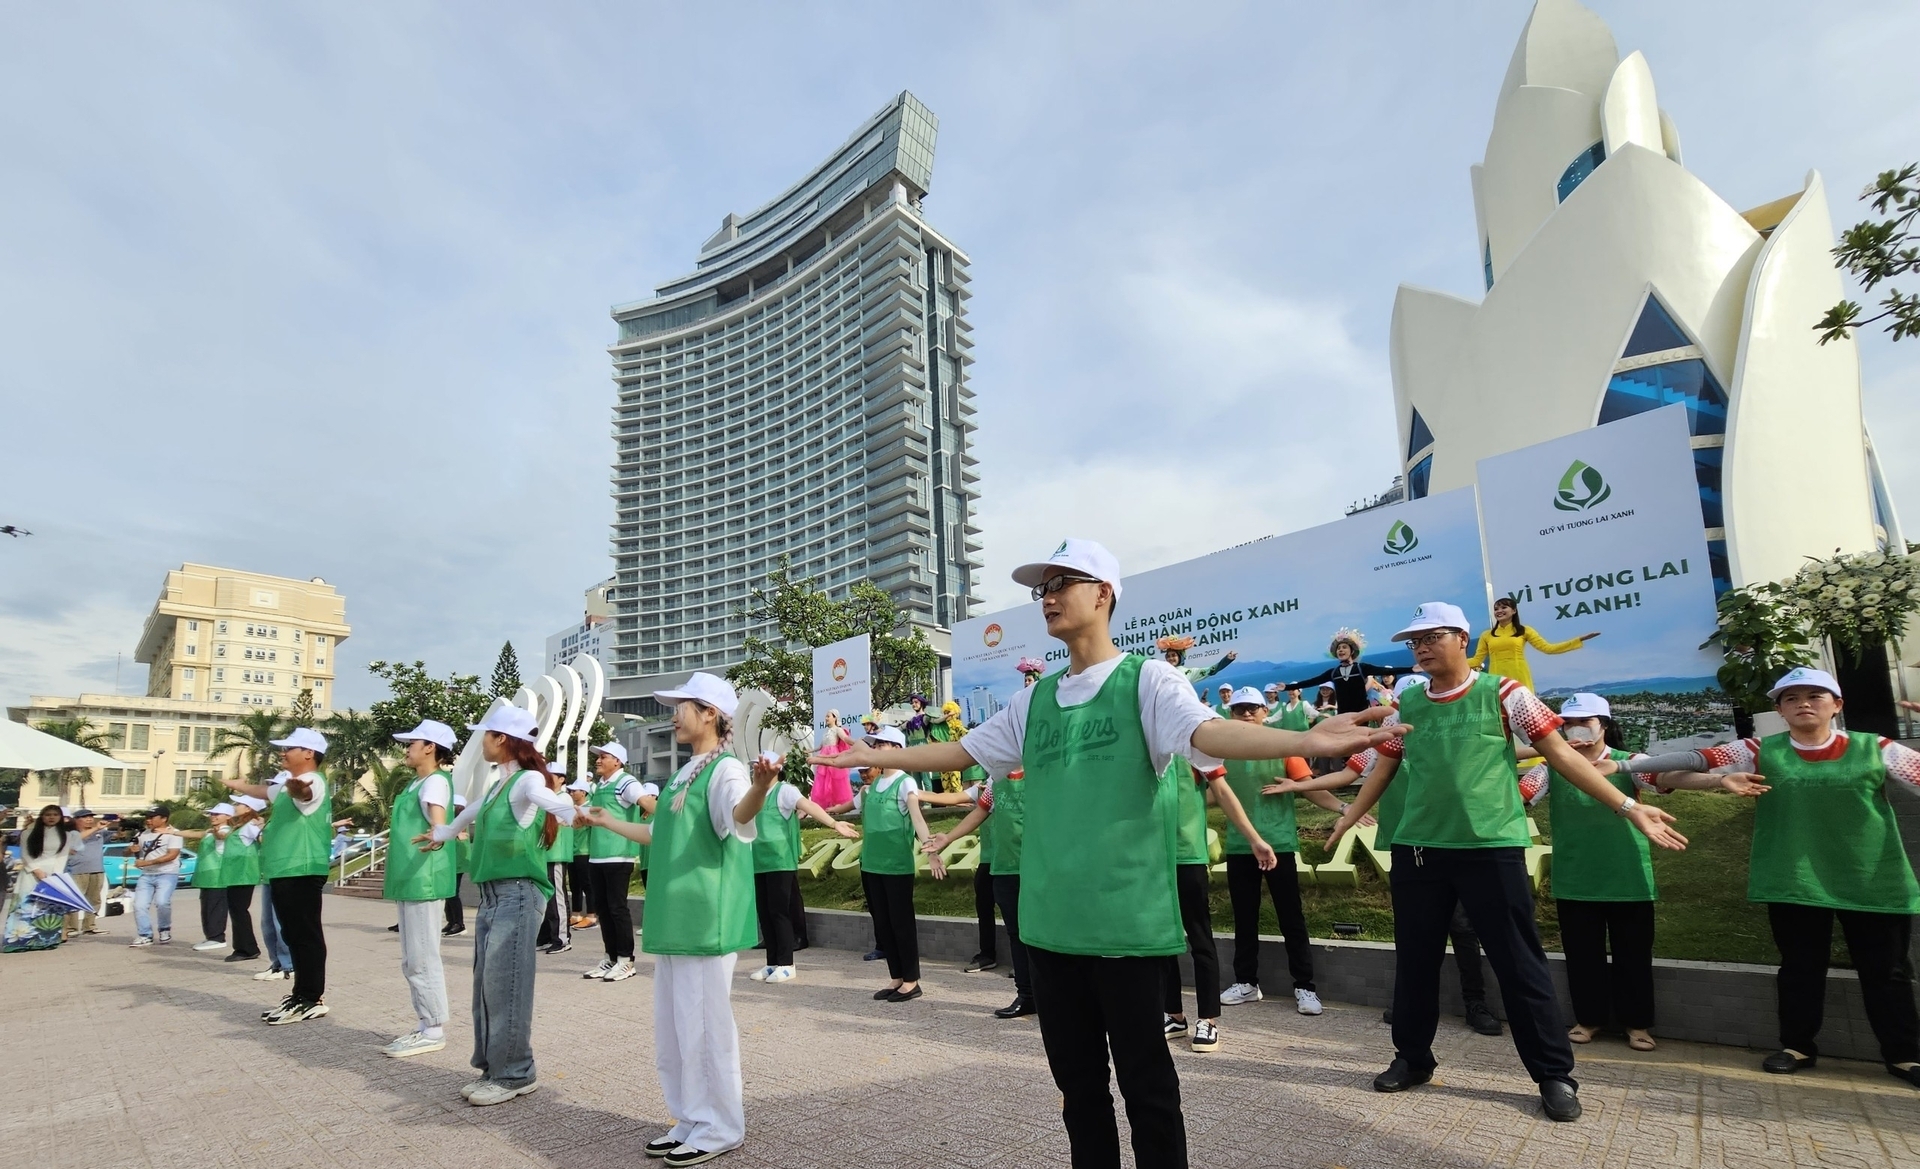 Tỉnh Khánh Hòa kêu gọi người dân, doanh nghiệp hưởng ứng 'Hành động xanh - Vì tương lai xanh'. Ảnh: KS.